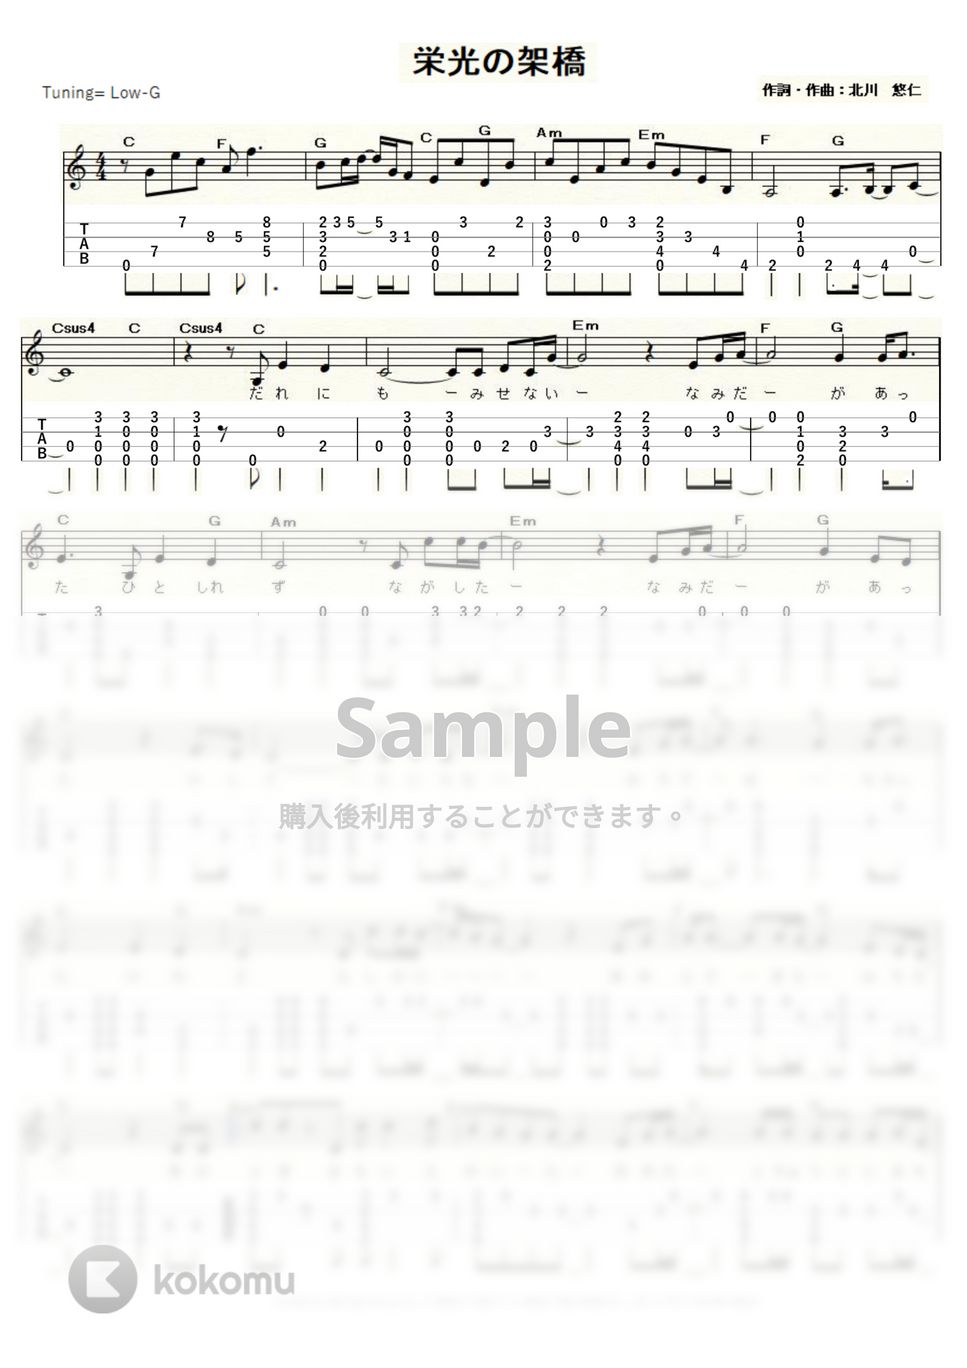 ゆず - 栄光の架橋 (ｳｸﾚﾚｿﾛ / Low-G / 上級) by ukulelepapa